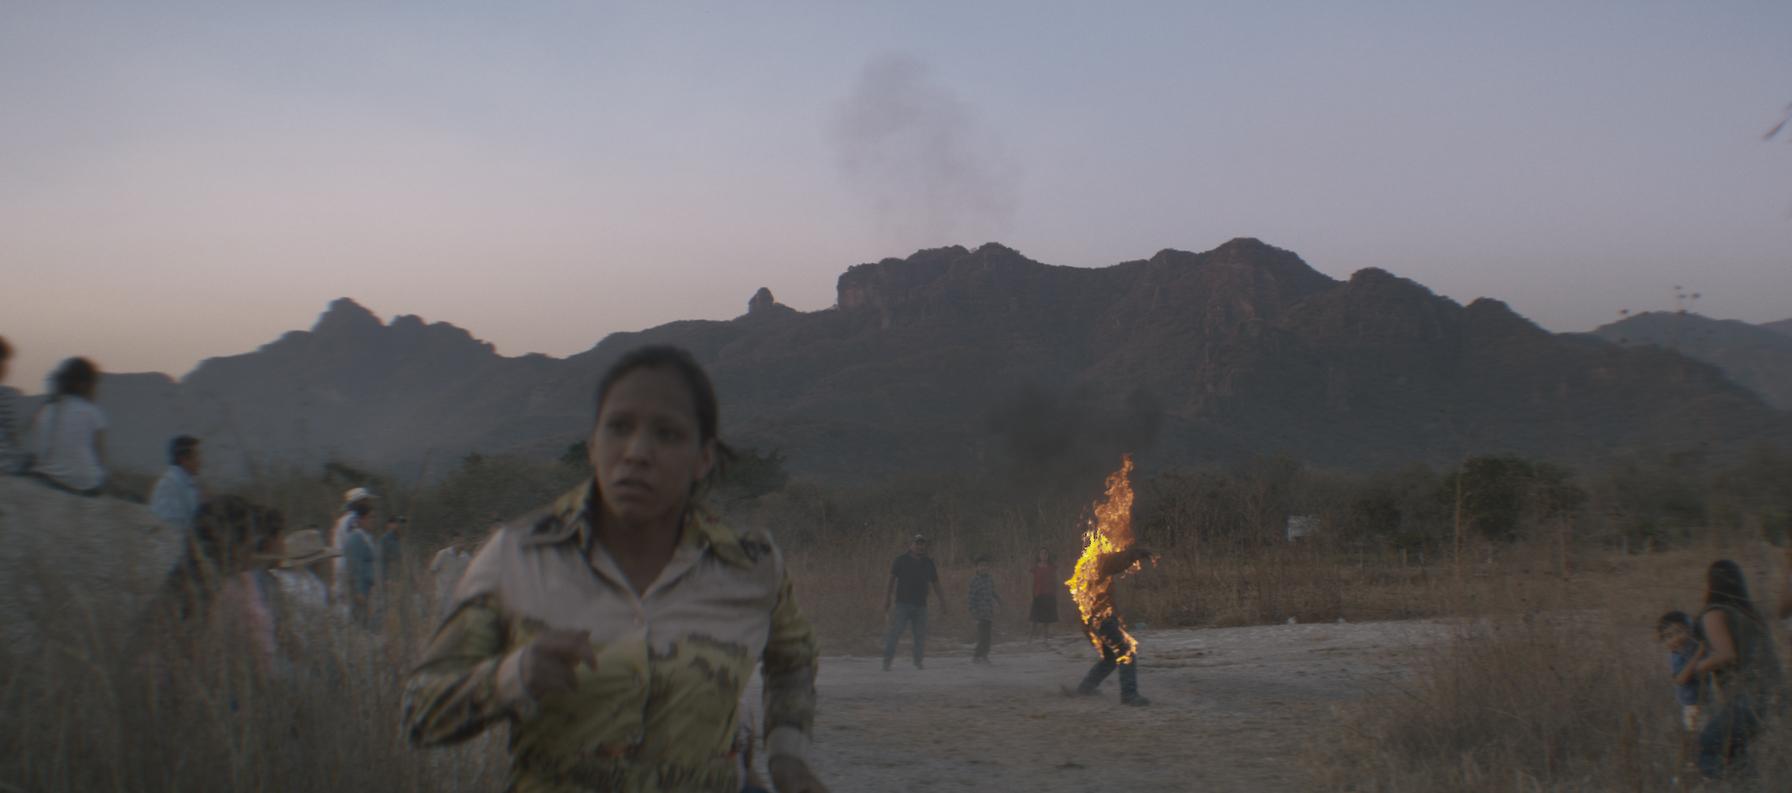 Eine Frau läuft von einer Szenerie weg, bei der mehrere weitere Menschen auf eine in Flammen stehende Person blicken.